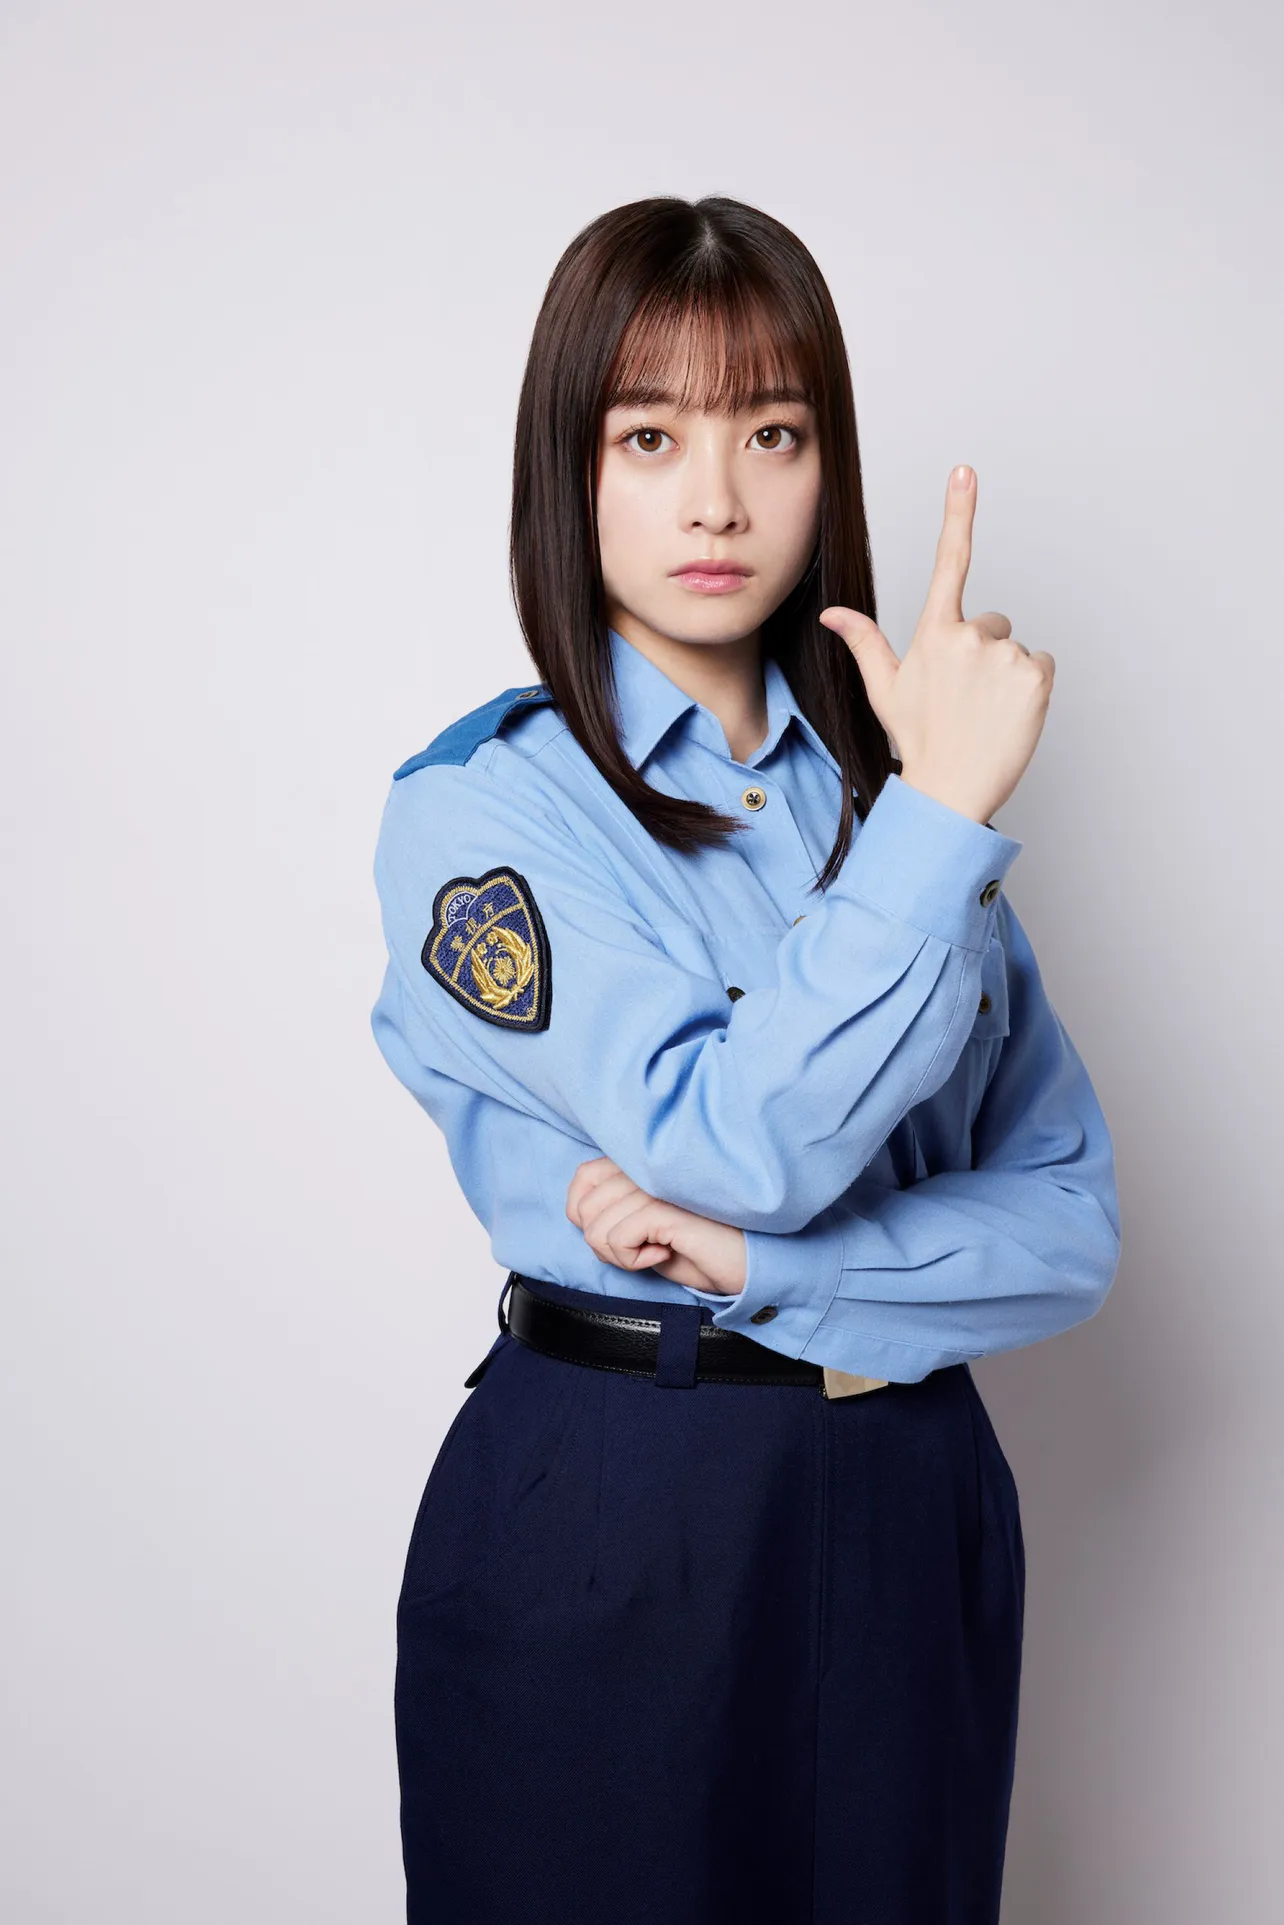  【写真】橋本環奈がフジテレビ系連続ドラマに初主演　警察の姿で凛々しい表情